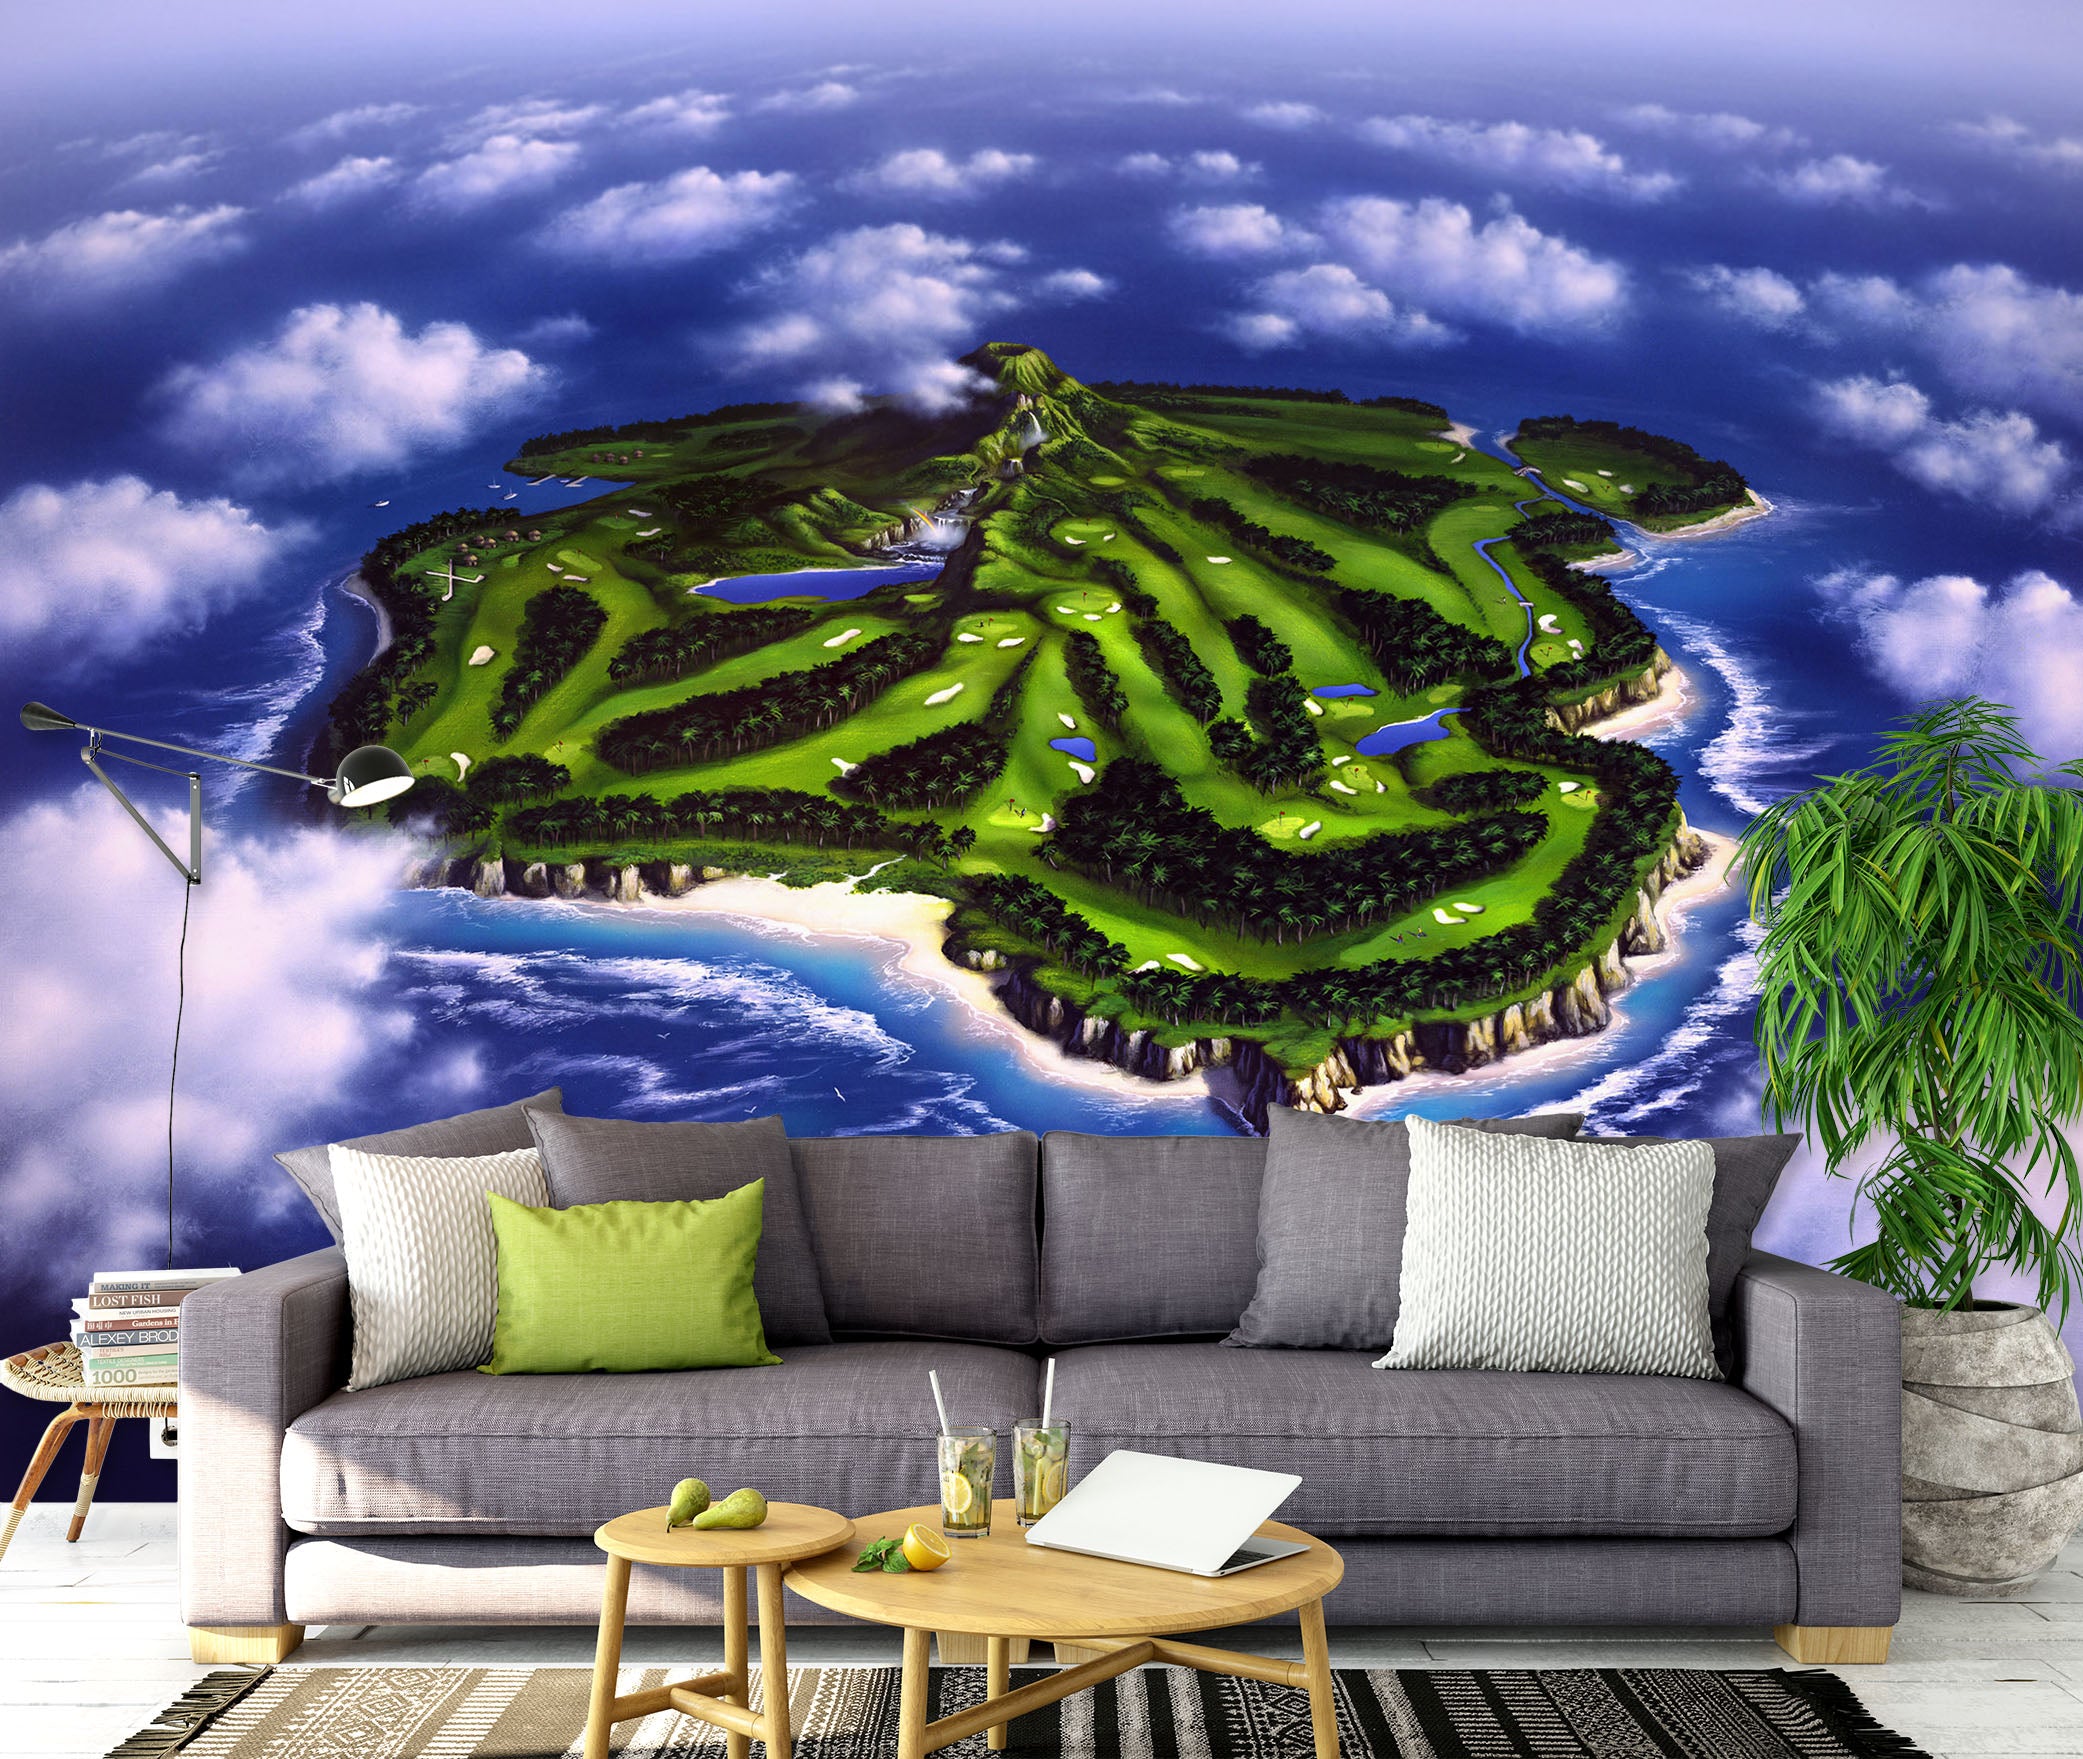 3D Paradise Isle 85005 Jerry LoFaro Wall Mural Wall Murals